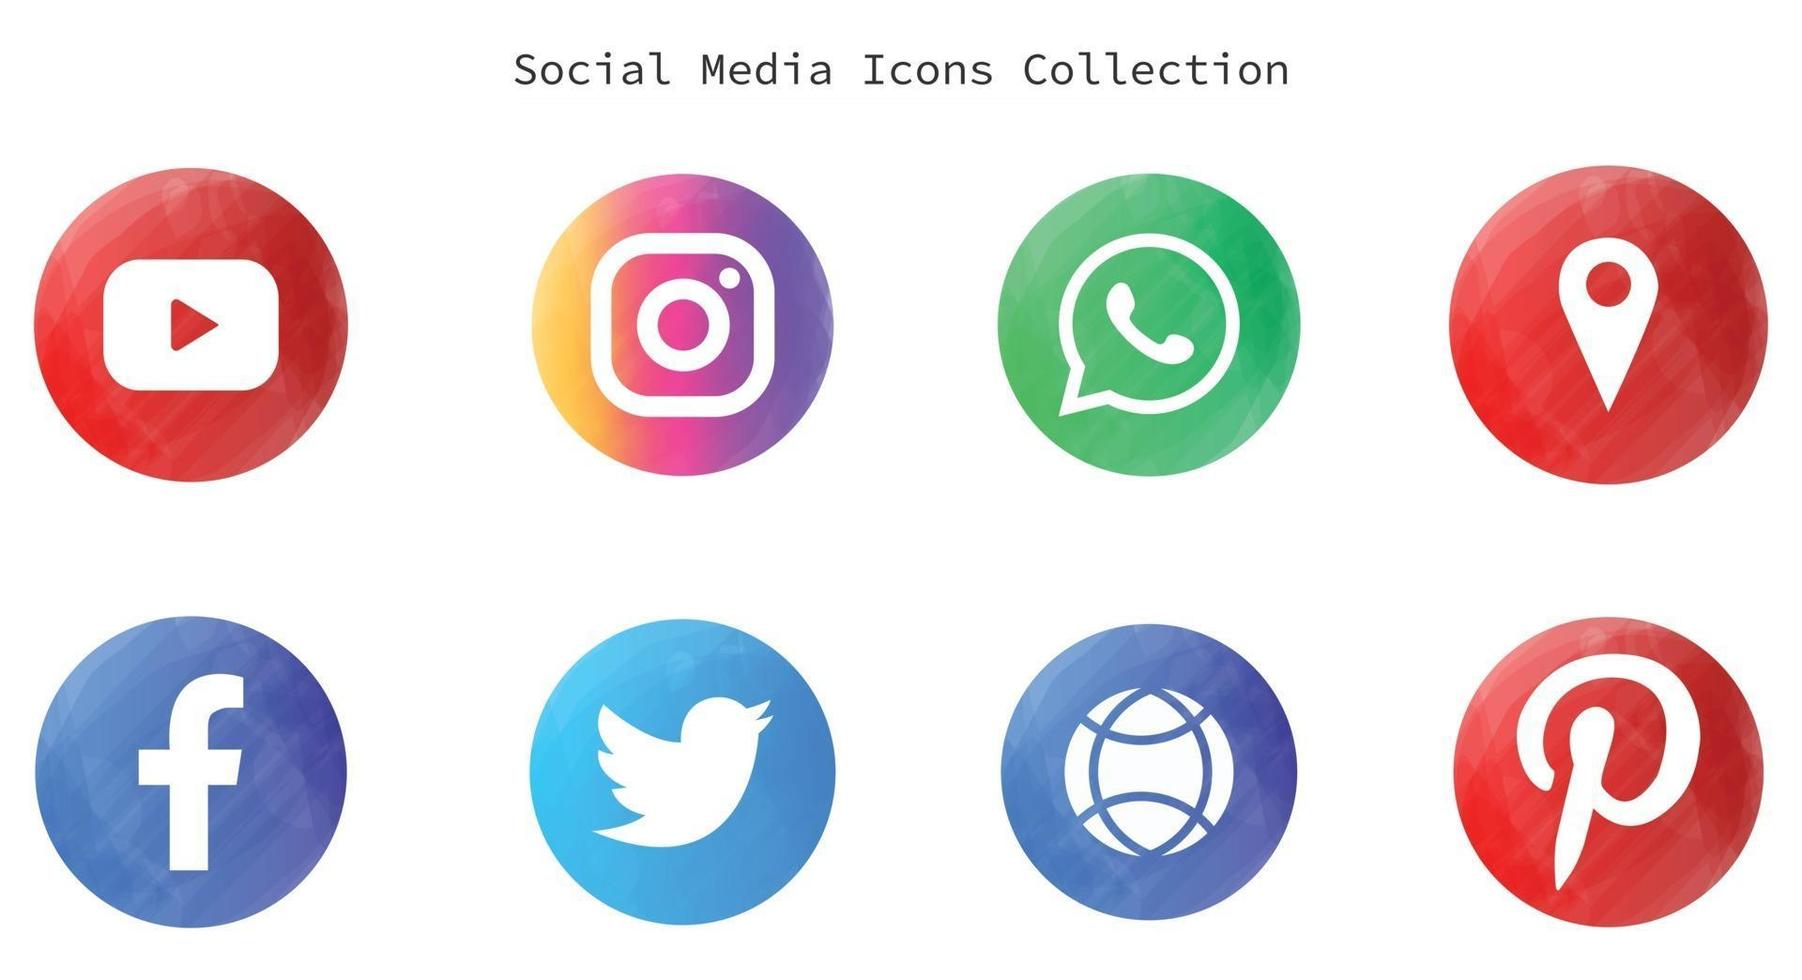 logotipos e íconos de redes sociales vector